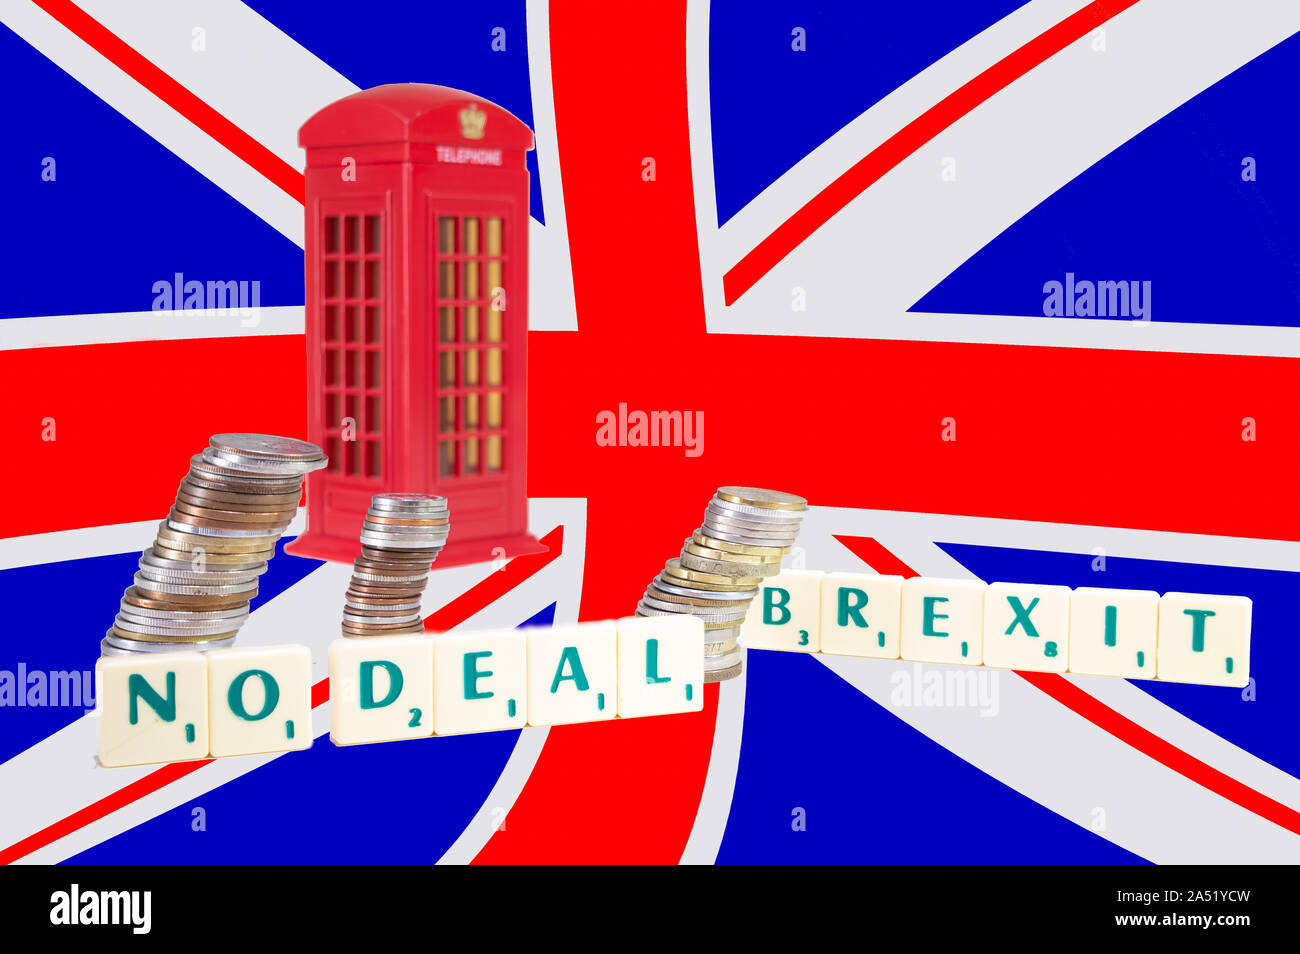 UK No Deal Brexit. Die Wörter buchstabiert und eine englische Telefonzelle mit Englischer Flagge im Hintergrund. Brexit Konzept Stockfoto